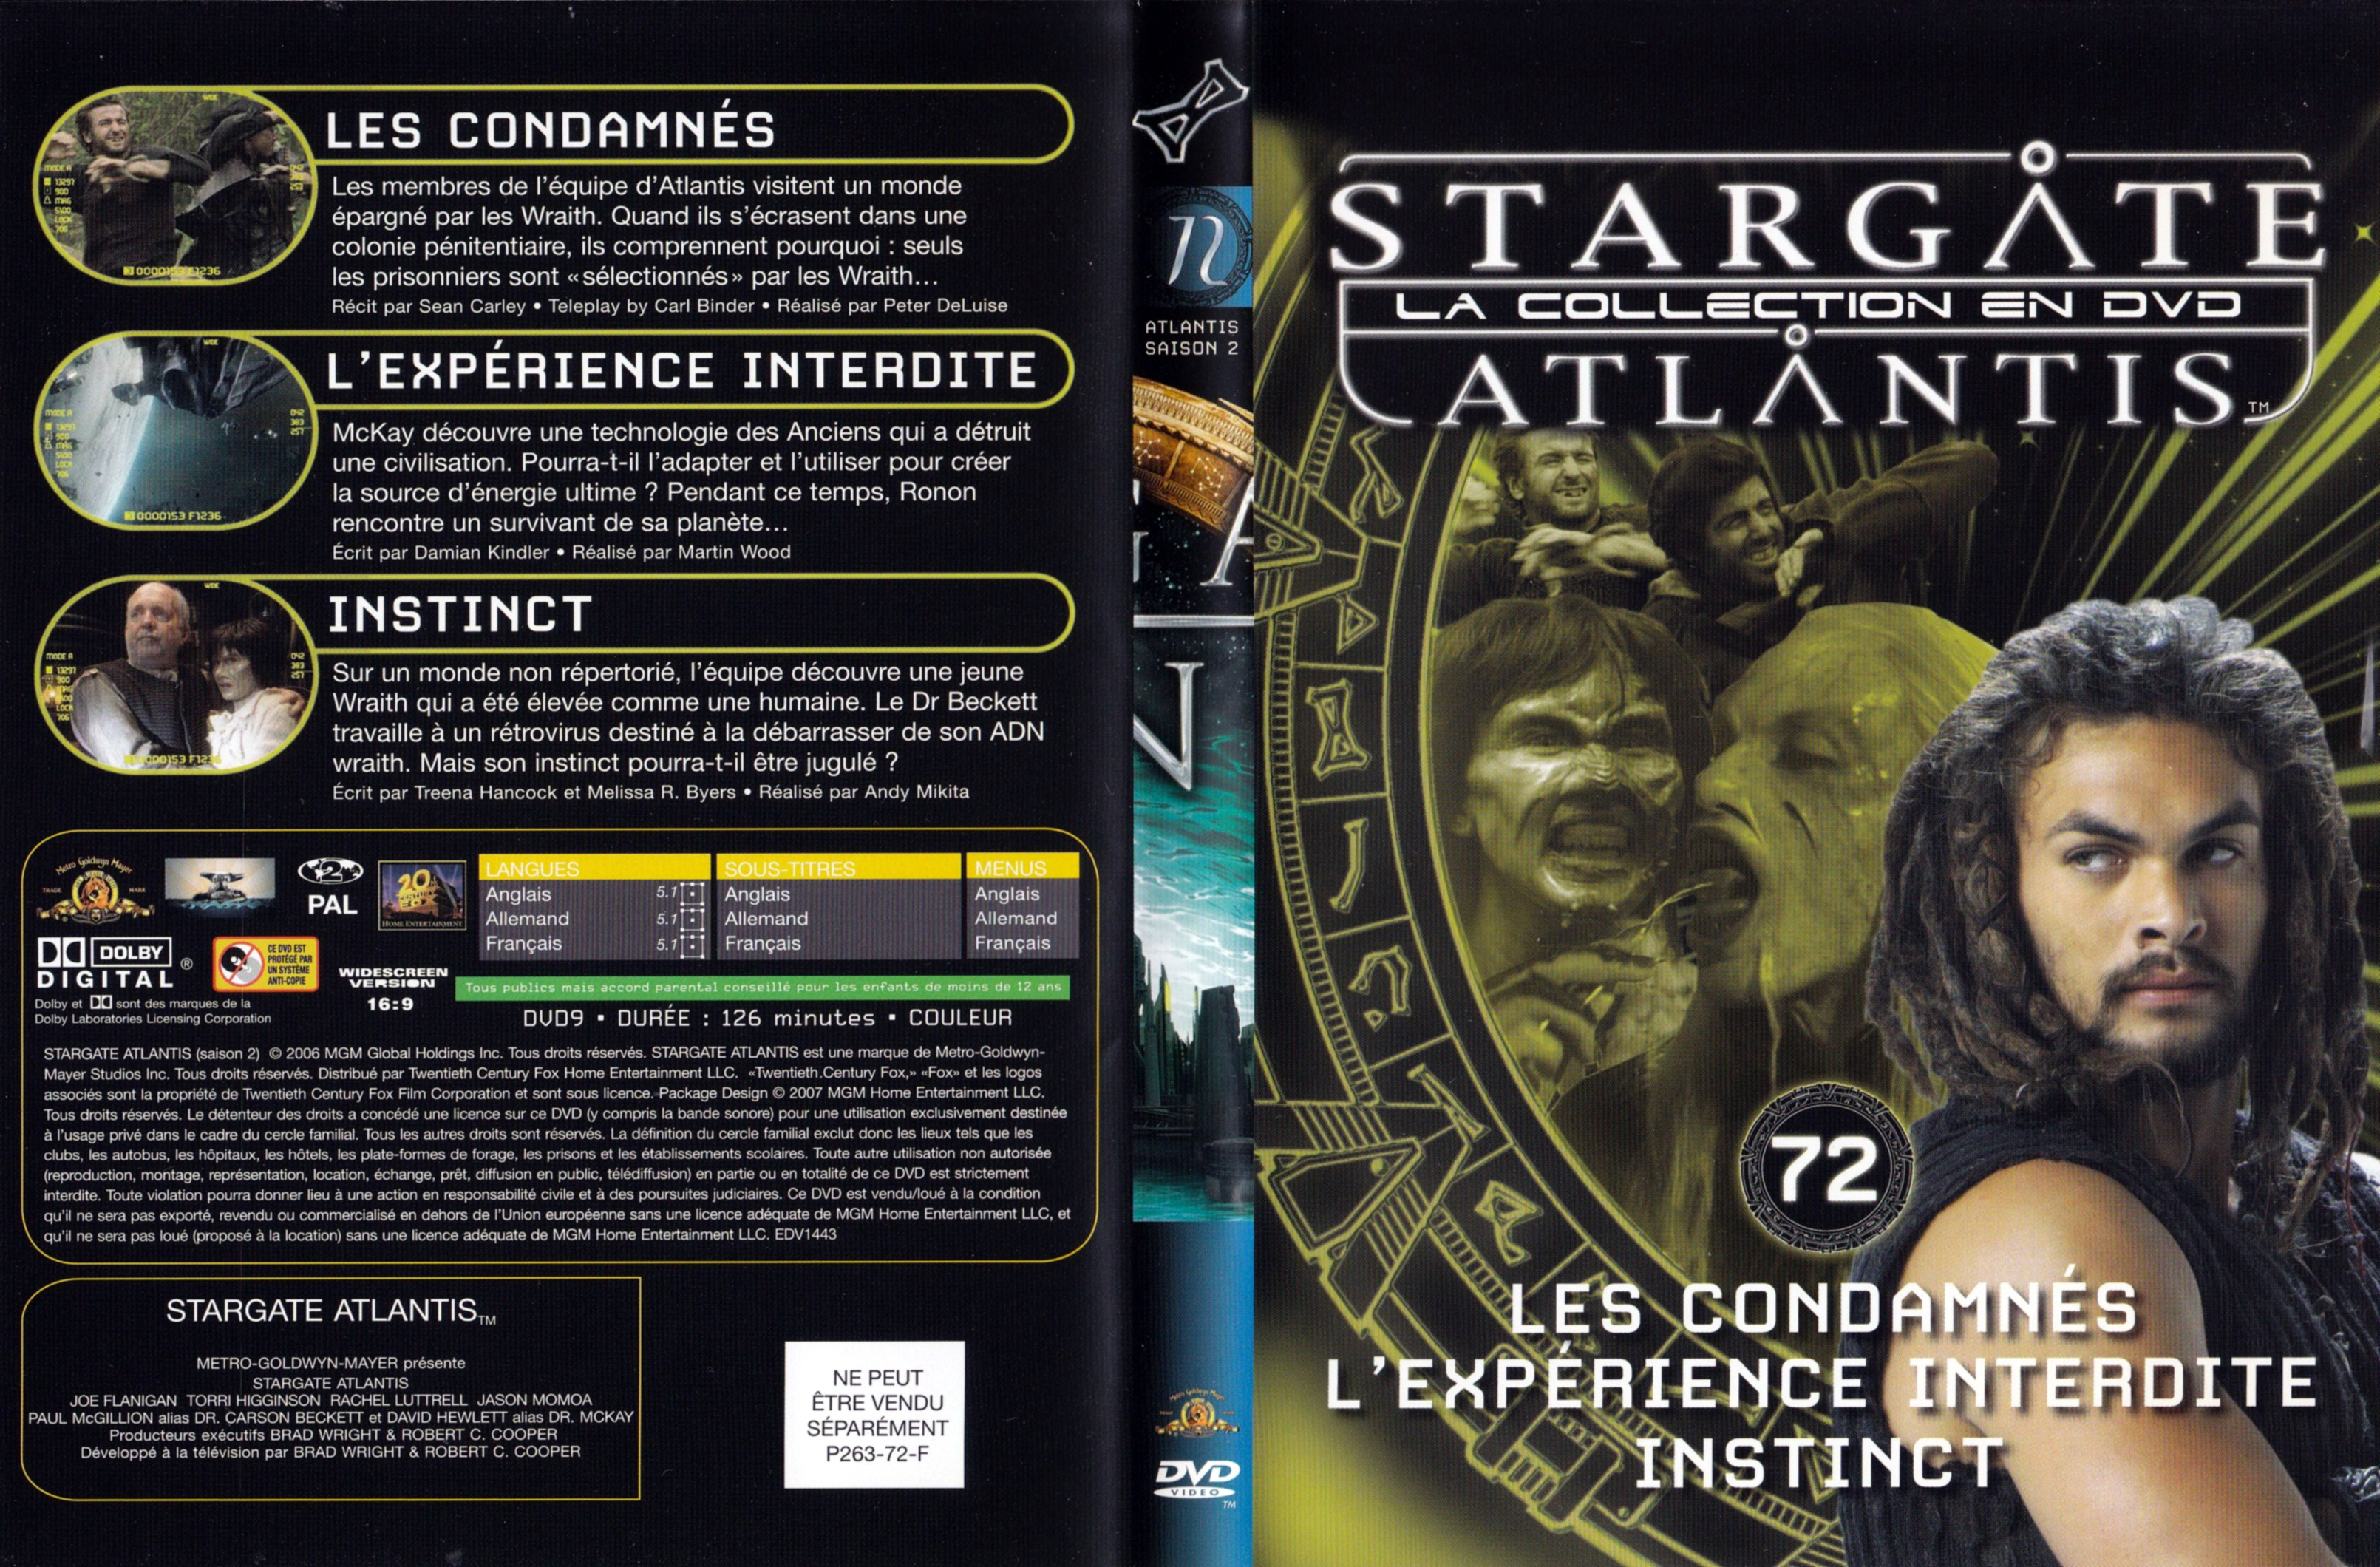 Jaquette DVD Stargate SG1 Atlantis Saison 2 vol 72